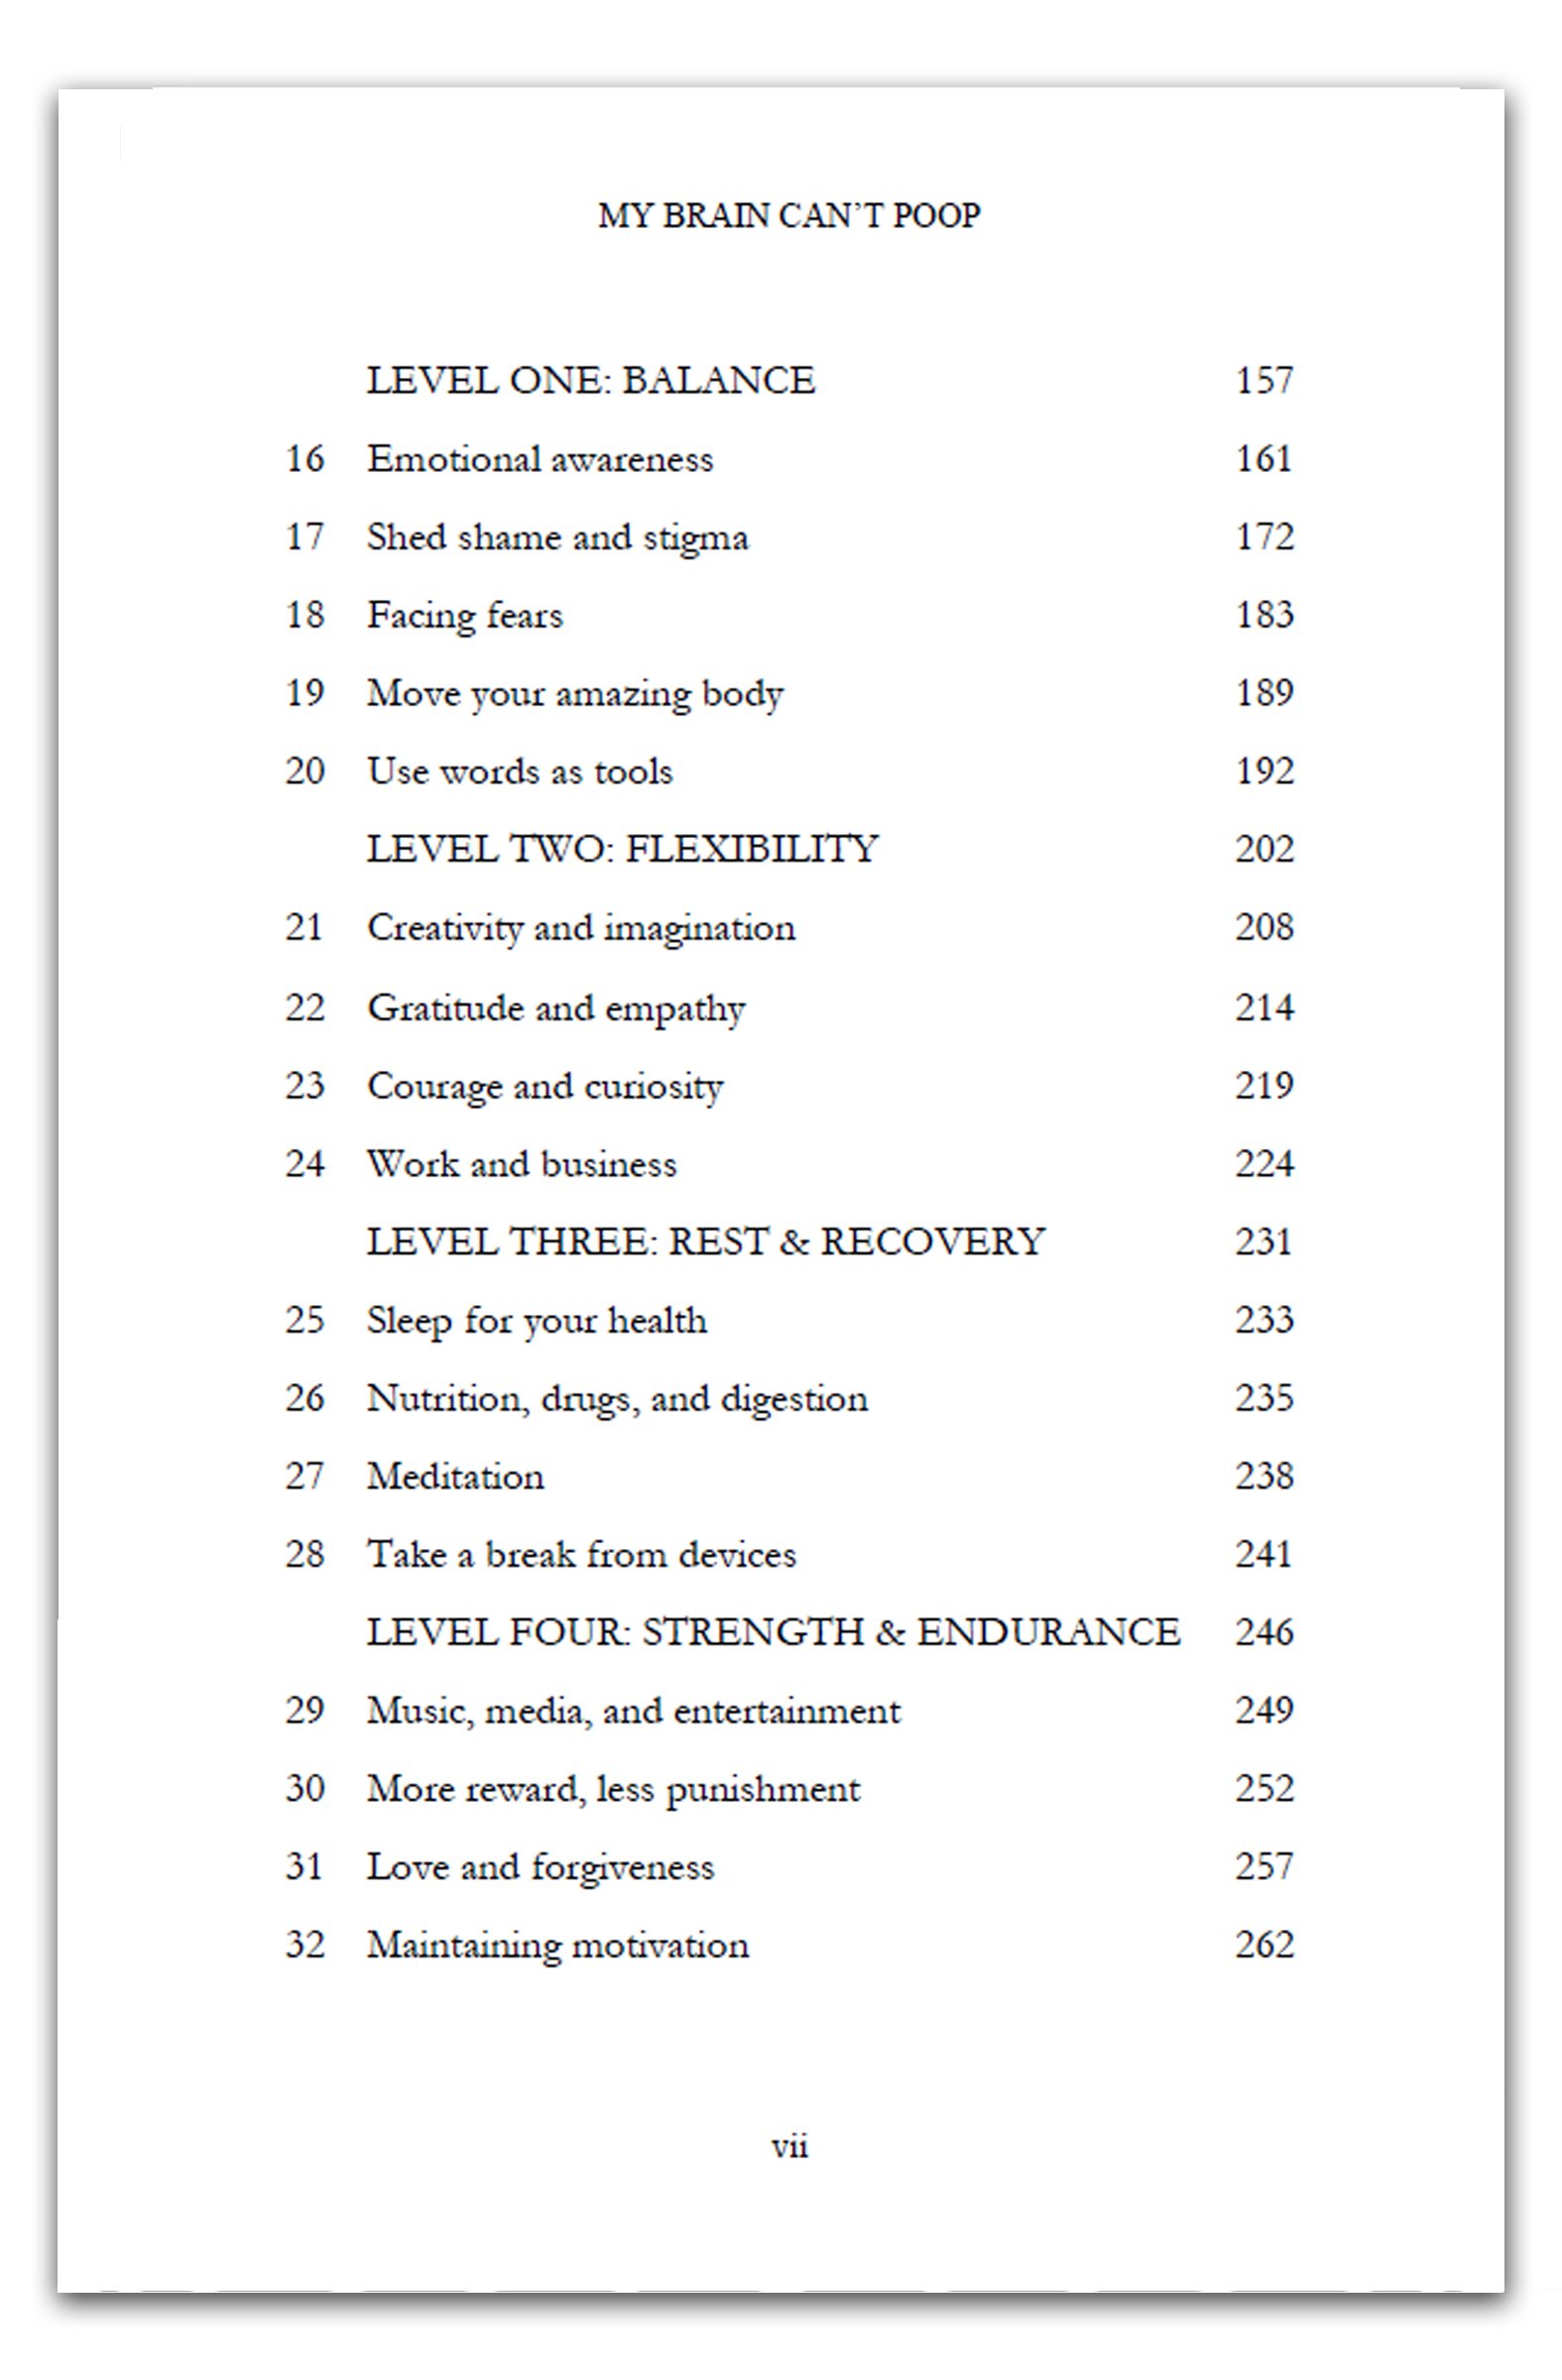 Book-contents-p2-v2.jpg